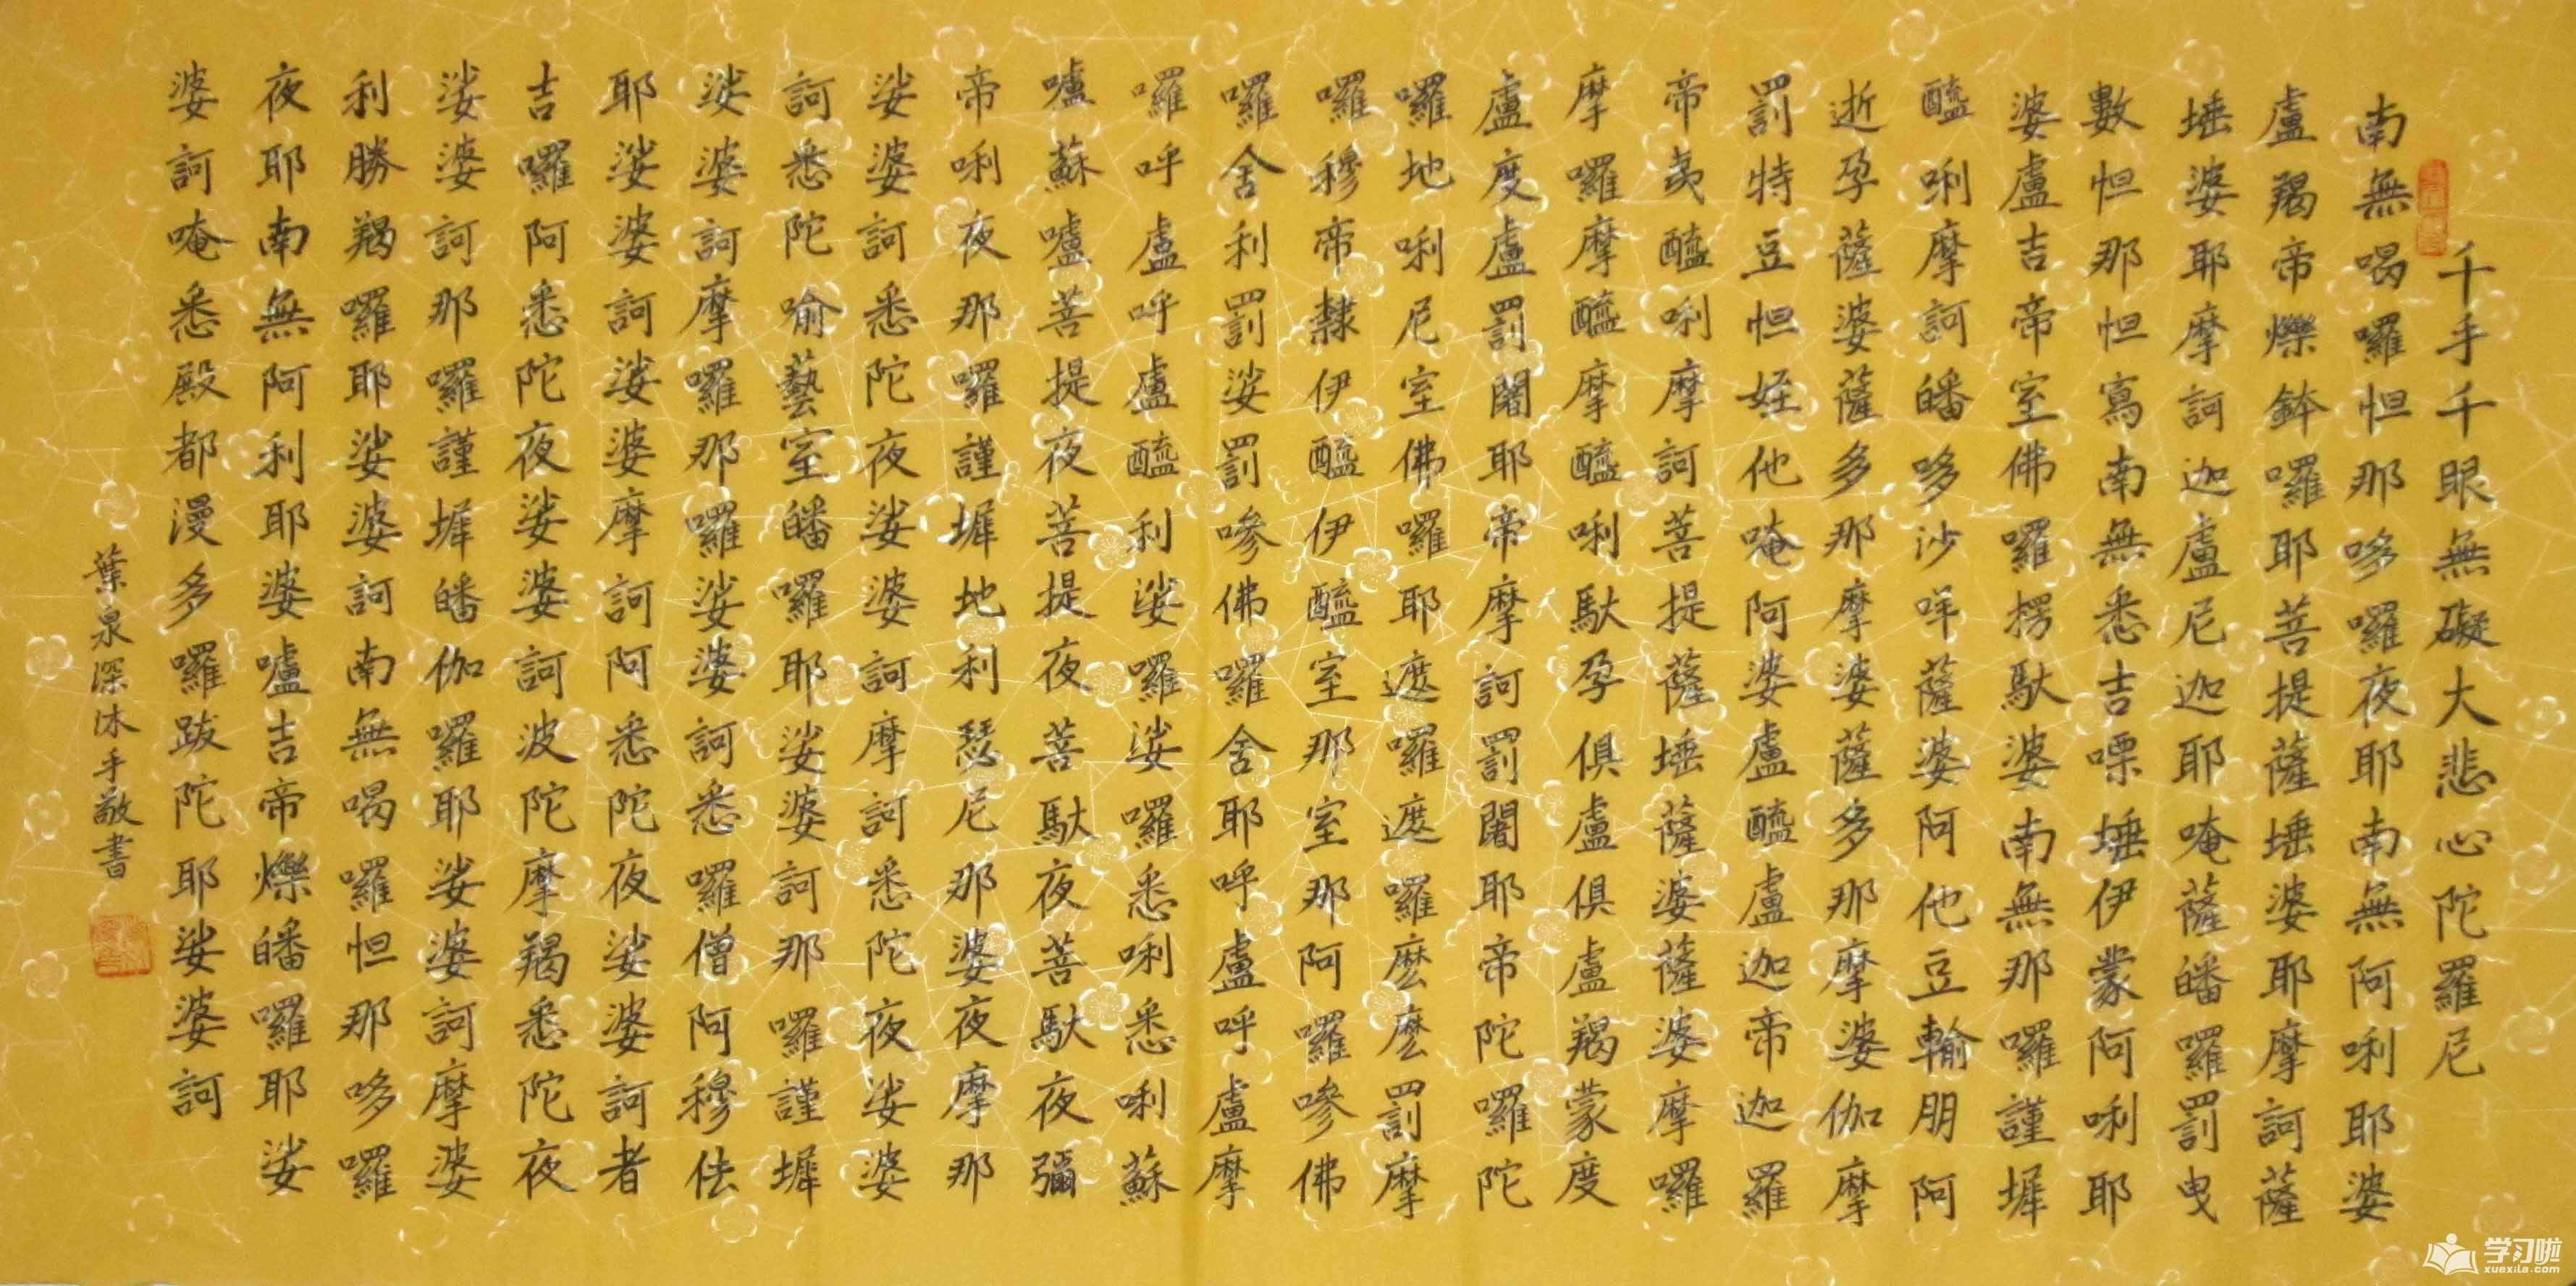 武则天写的这28个字成为佛经偈语,千百年来广为流传